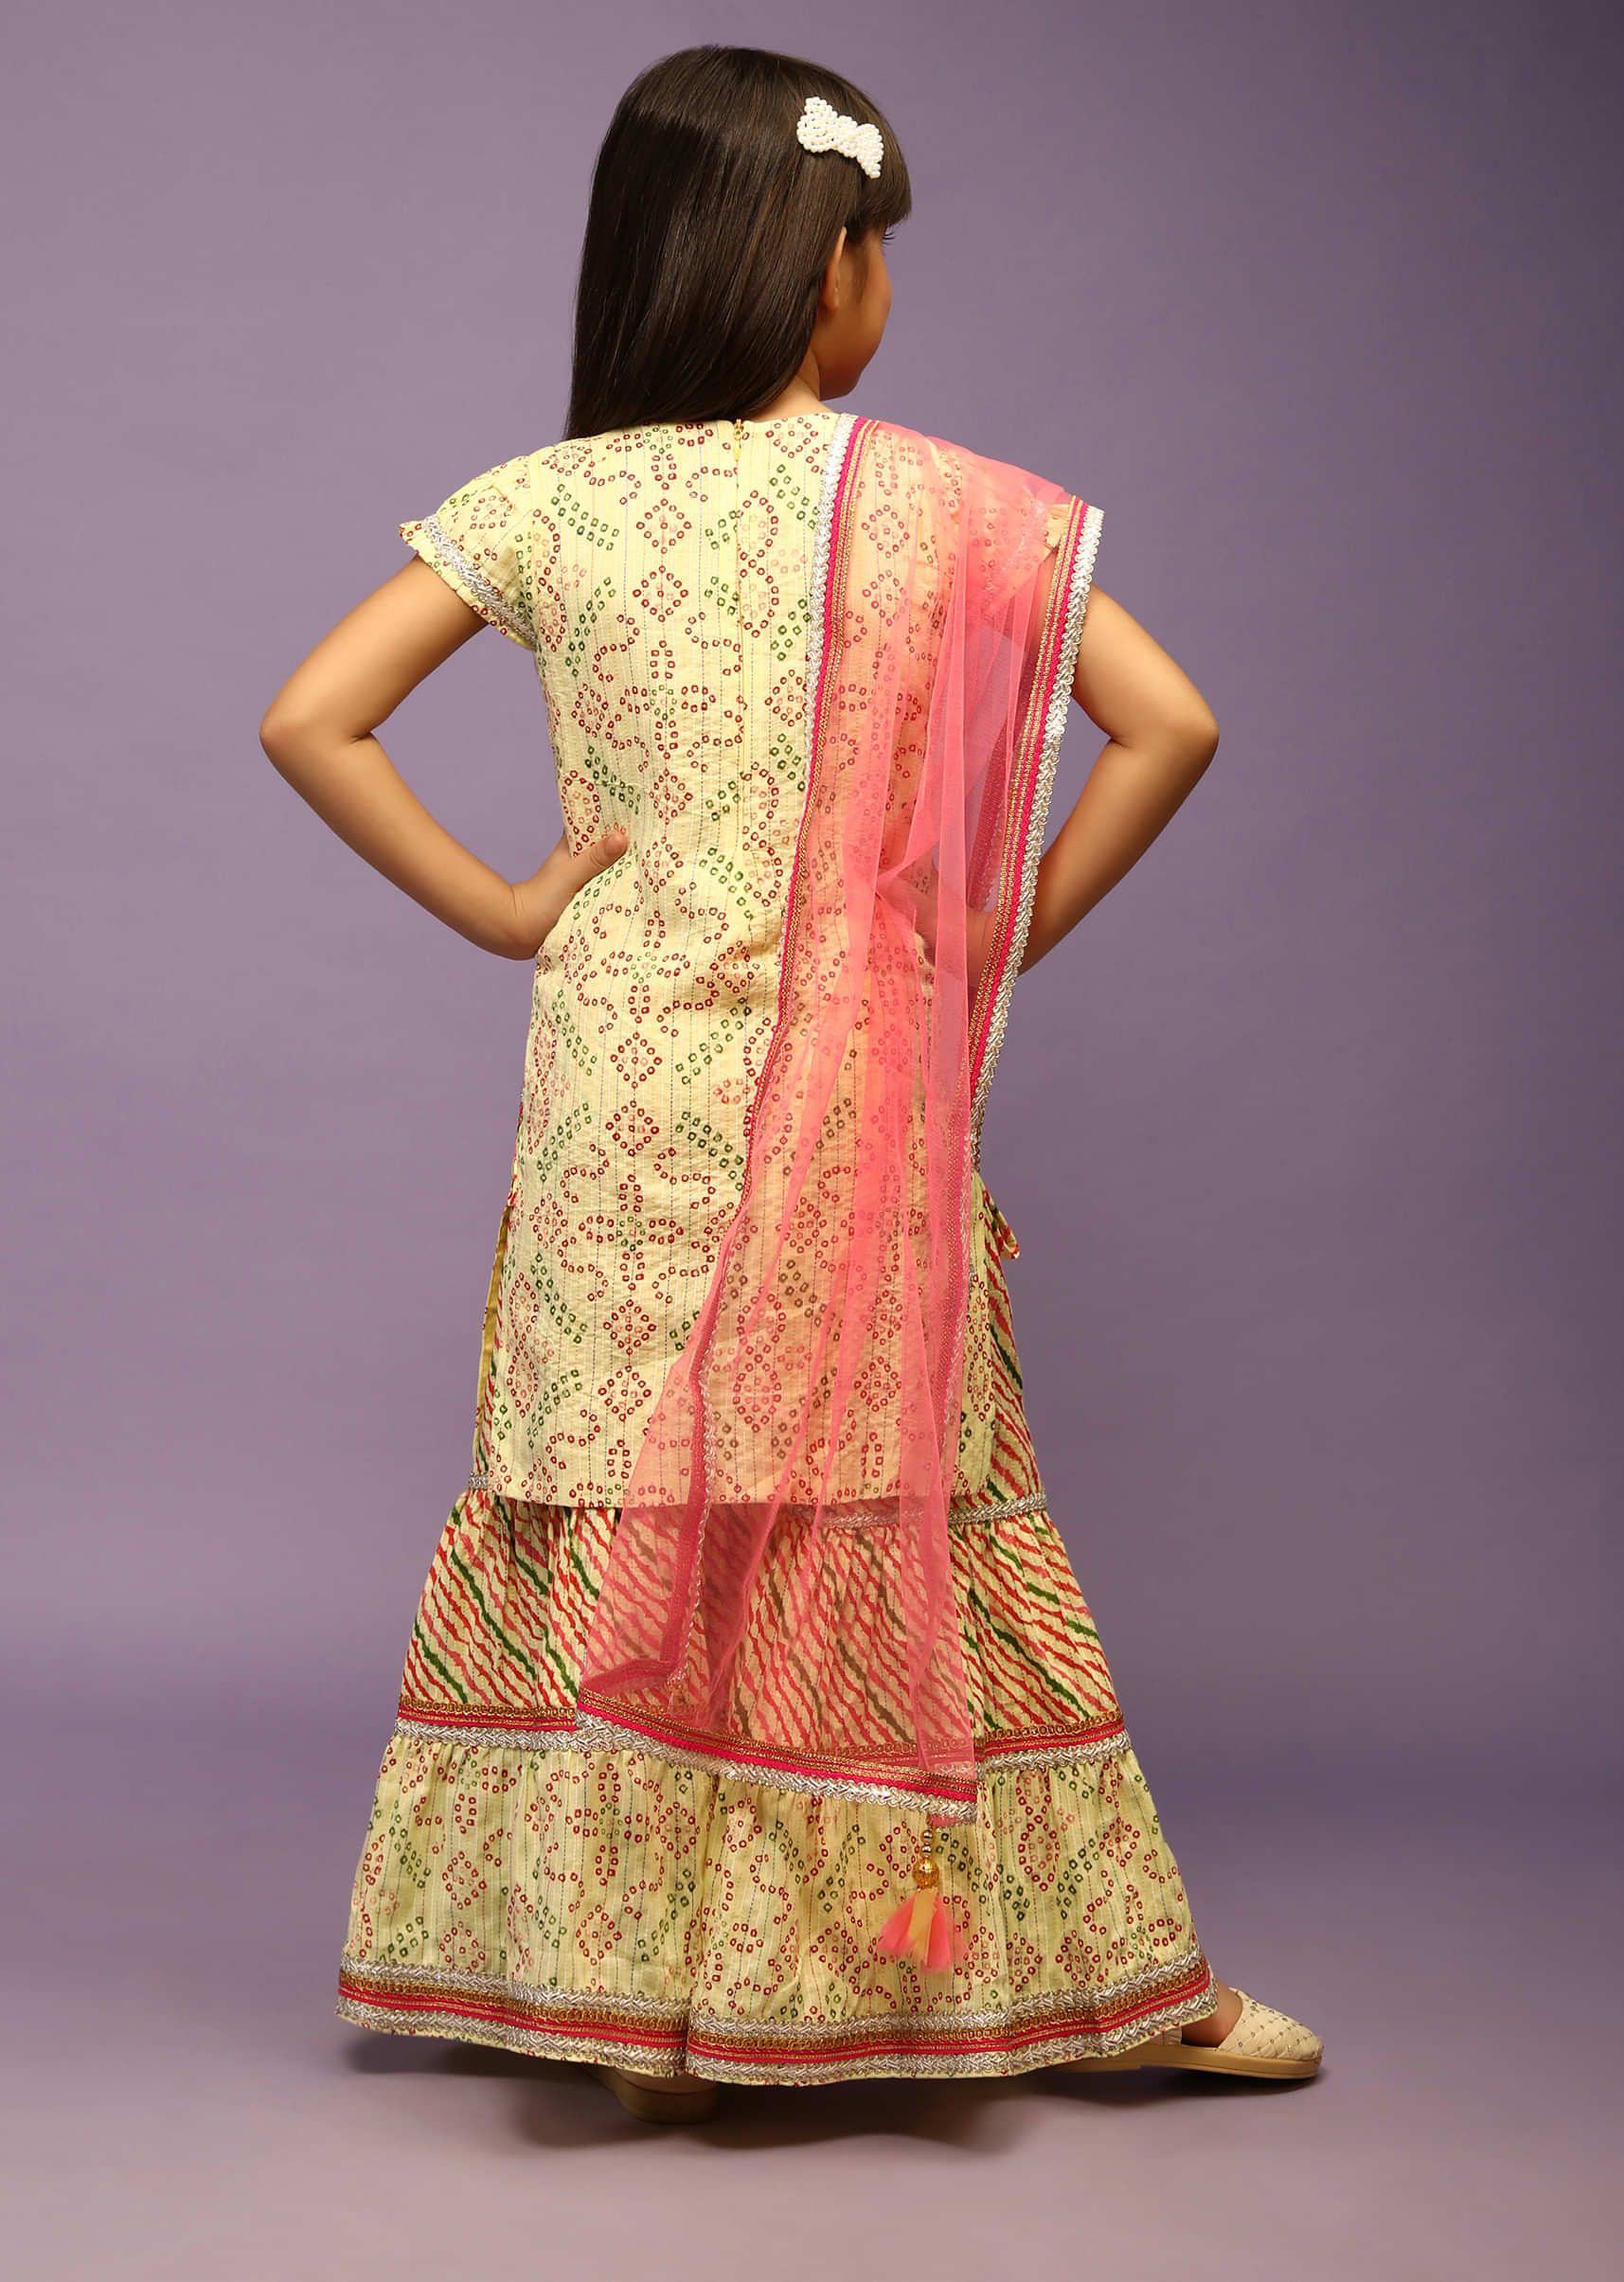 Kalki Girls Powder Yellow Sharara Suit In Cotton With Bandhani Print  